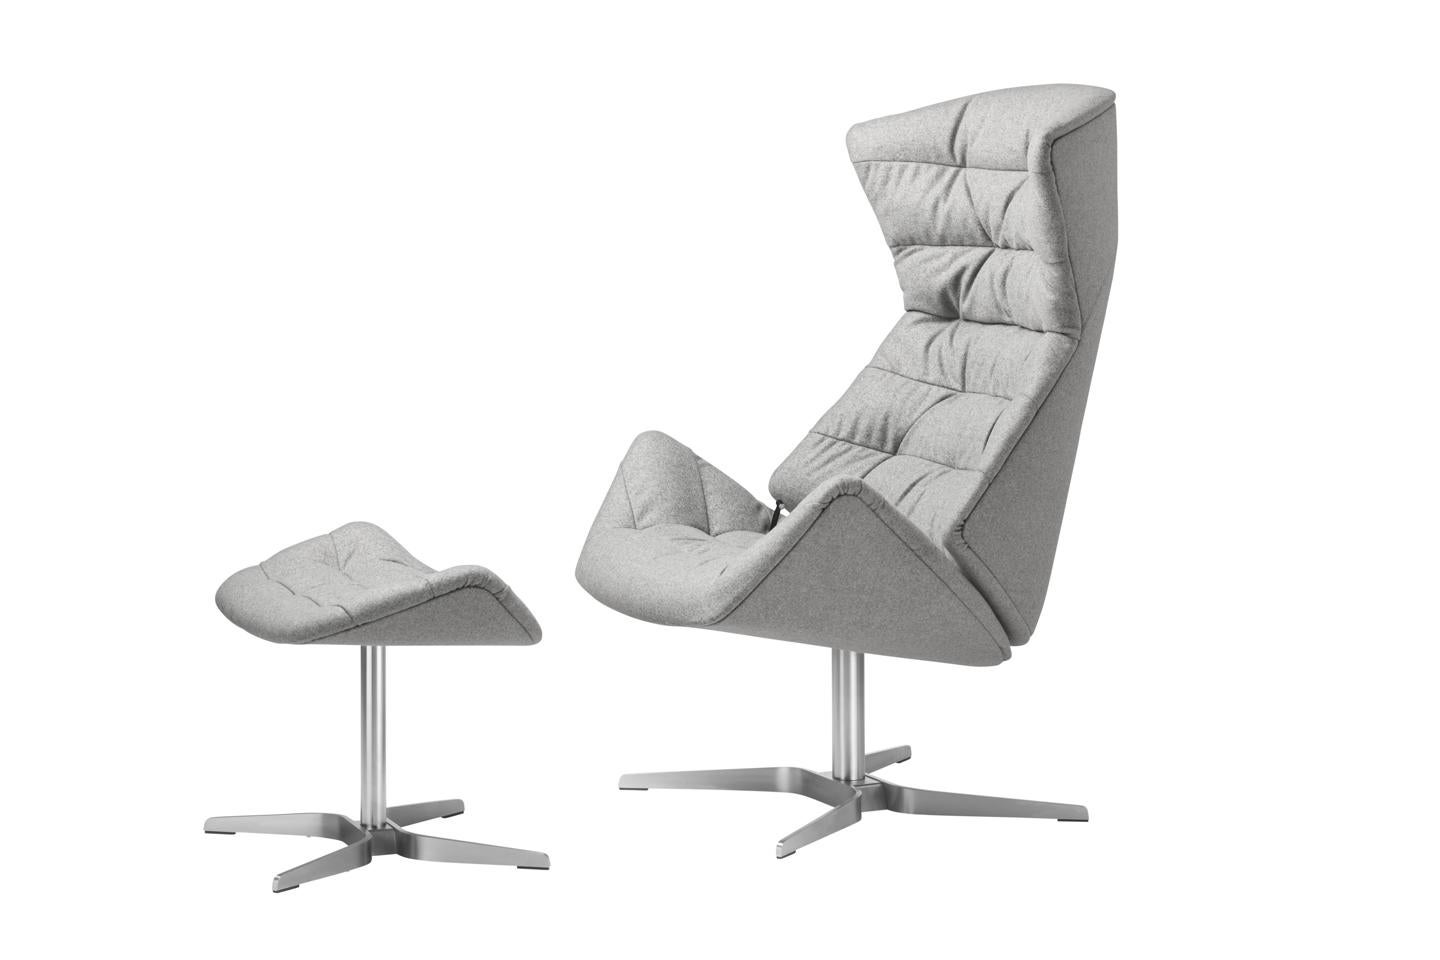 GAMME 808
Avec la gamme 808, le studio de design munichois Formstelle a créé un fauteuil de salon qui allie un confort maximal à de nombreuses possibilités d'individualisation. La chaise longue 808 joue sur le contraste entre une coque protectrice